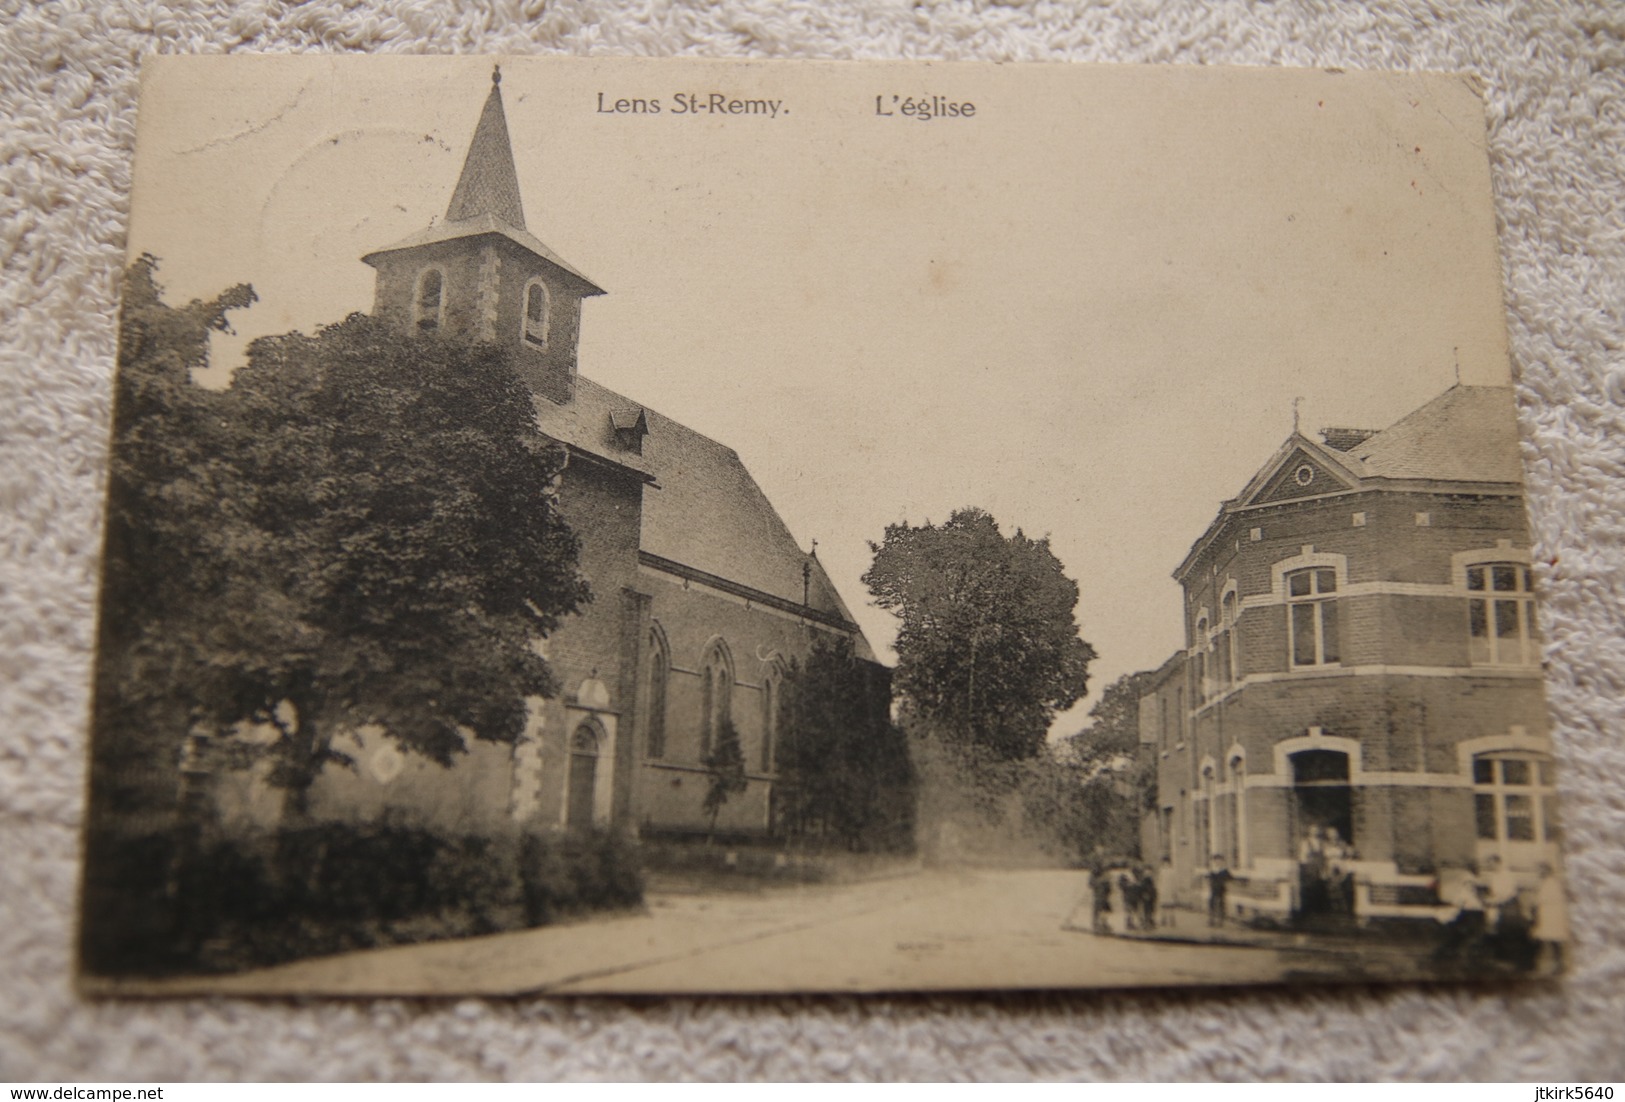 Lens St-Remy "L'église" - Hannut